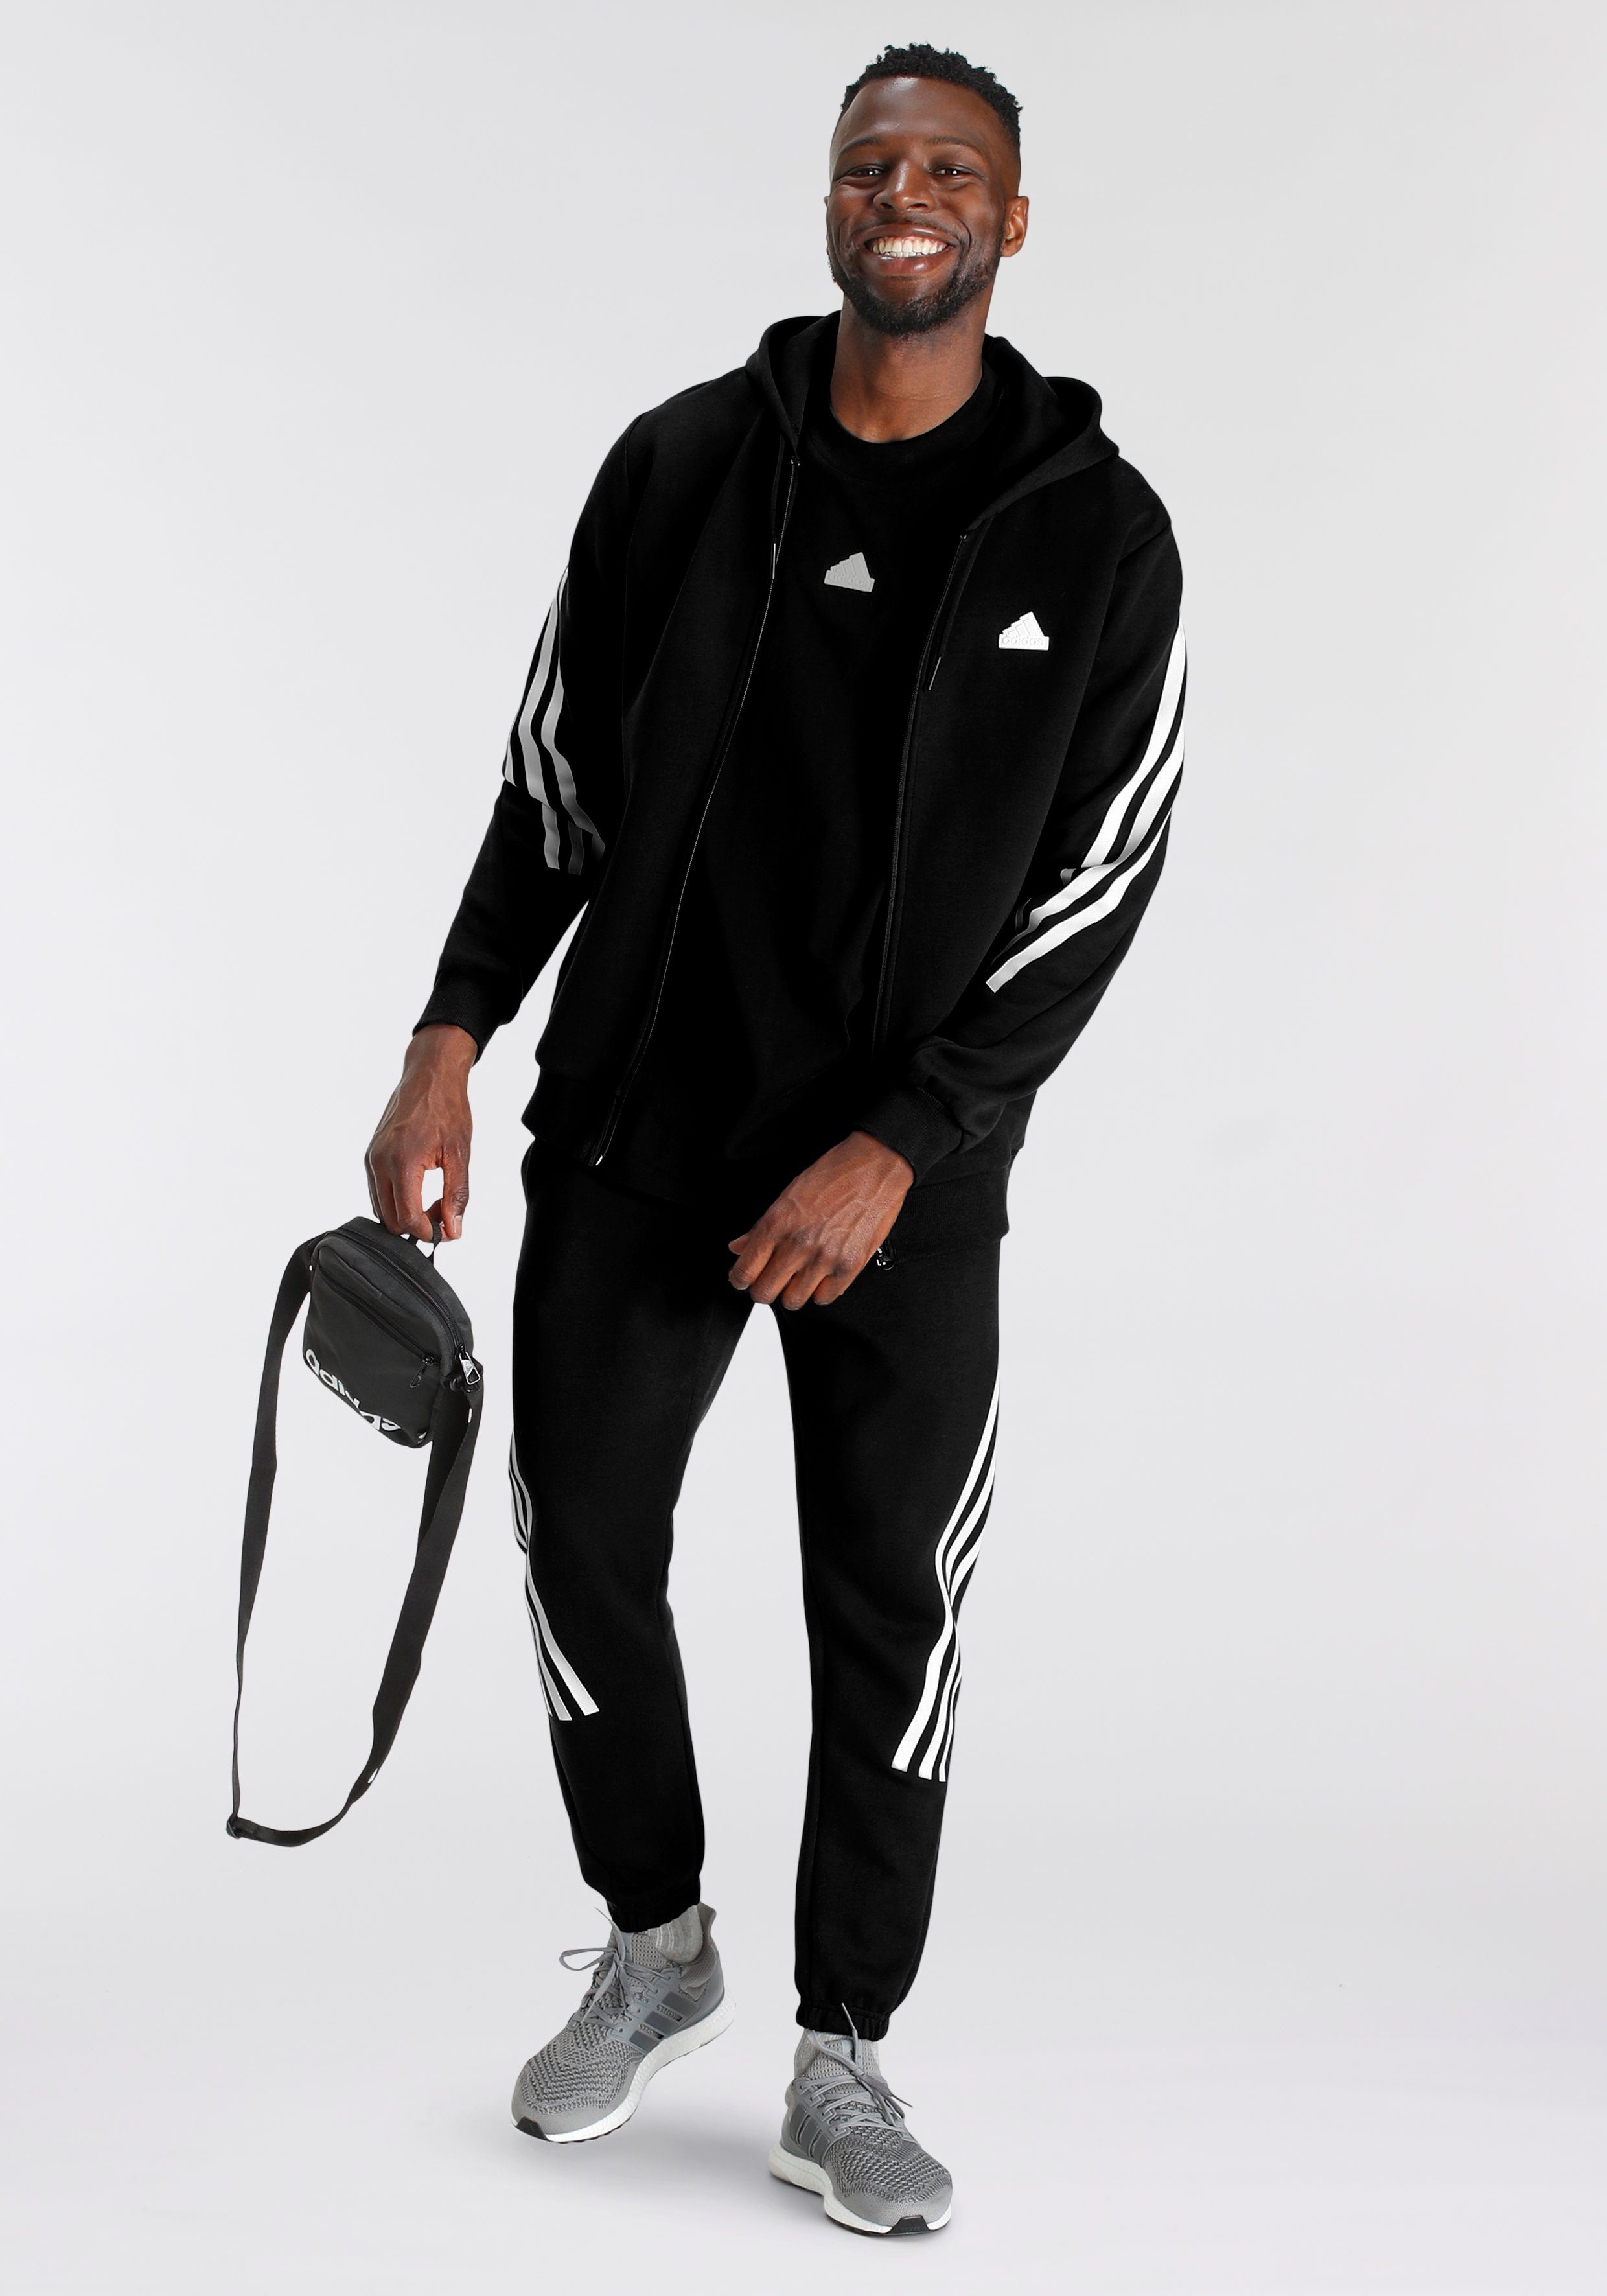 White KAPUZENJACKE Sportswear / Black ICONS FUTURE Sweatshirt adidas 3STREIFEN